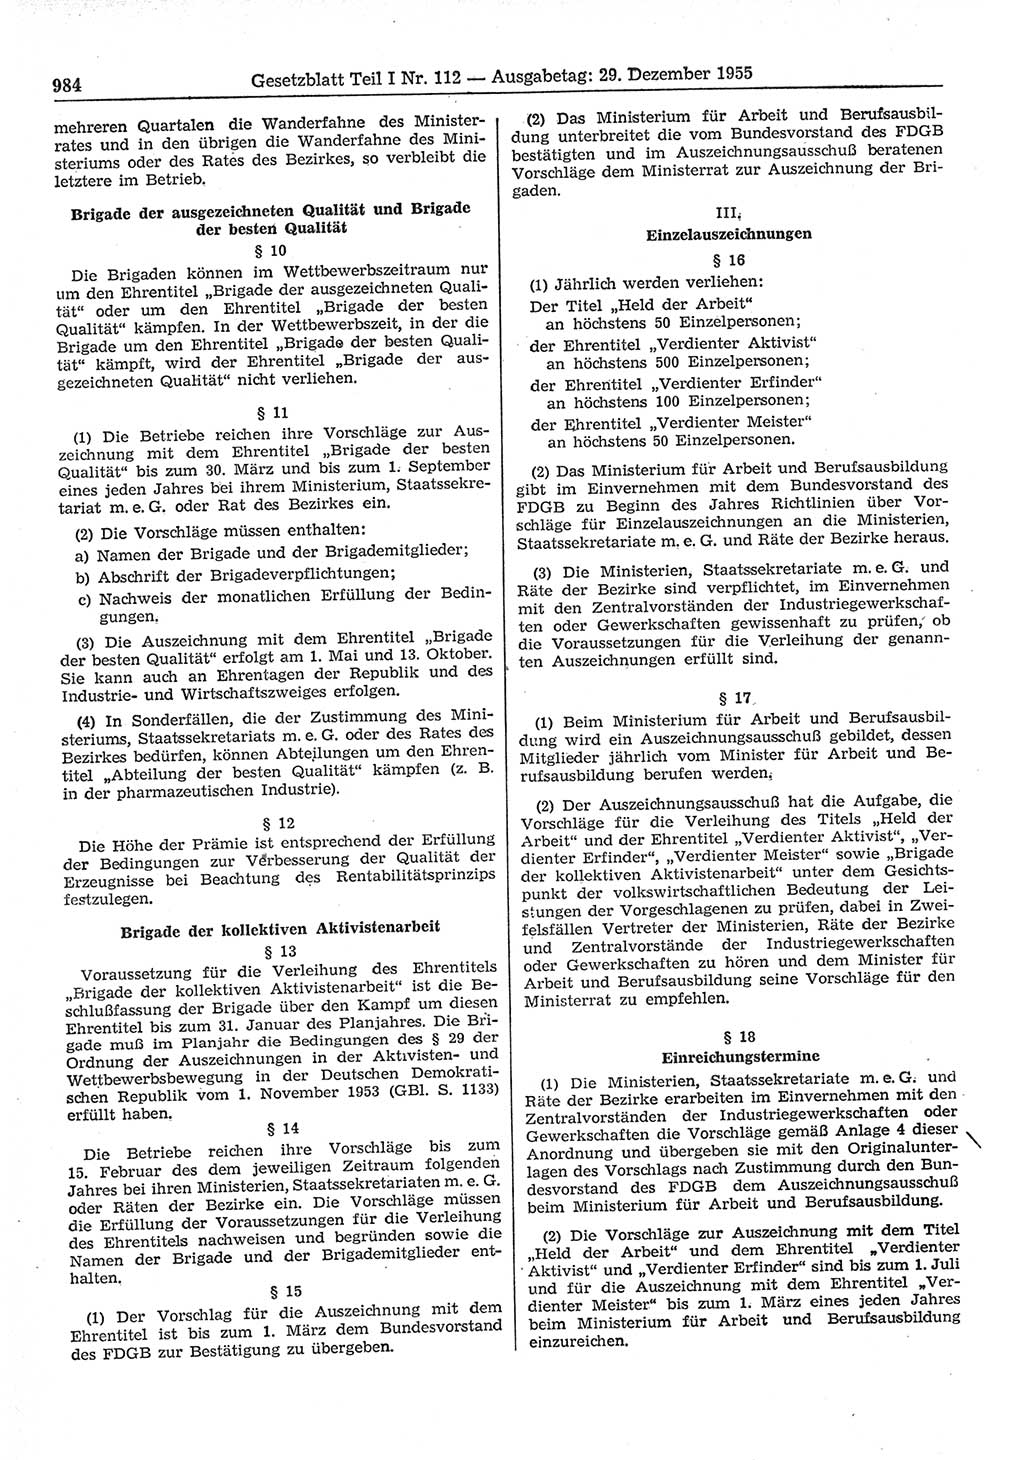 Gesetzblatt (GBl.) der Deutschen Demokratischen Republik (DDR) Teil Ⅰ 1955, Seite 984 (GBl. DDR Ⅰ 1955, S. 984)